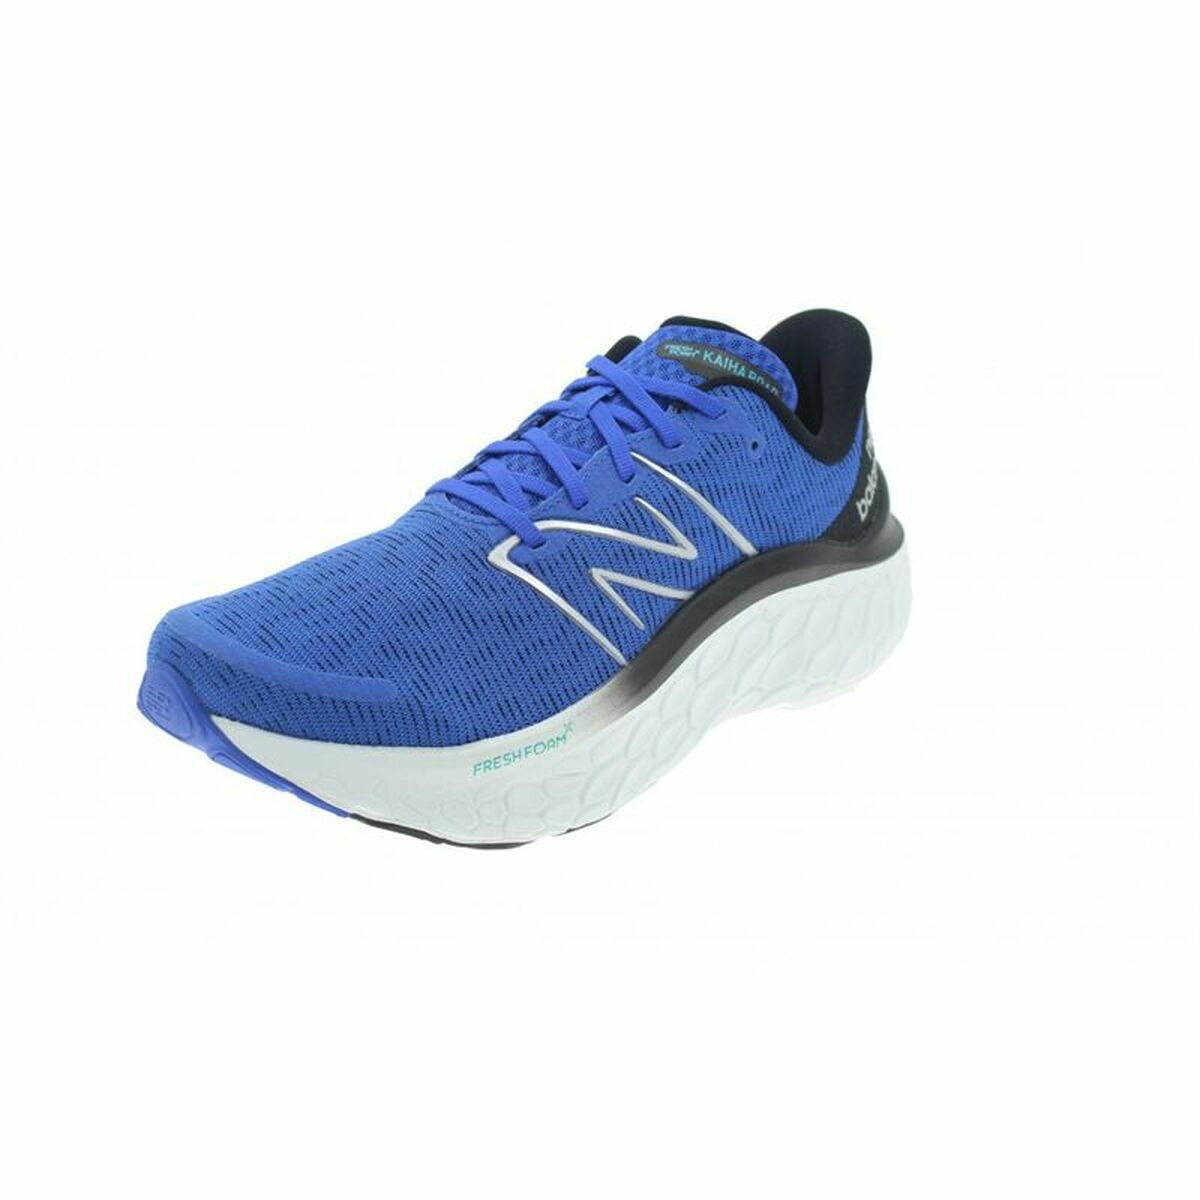 Chaussures de sport pour femme New Balance Kaiha Rd Bleu Homme